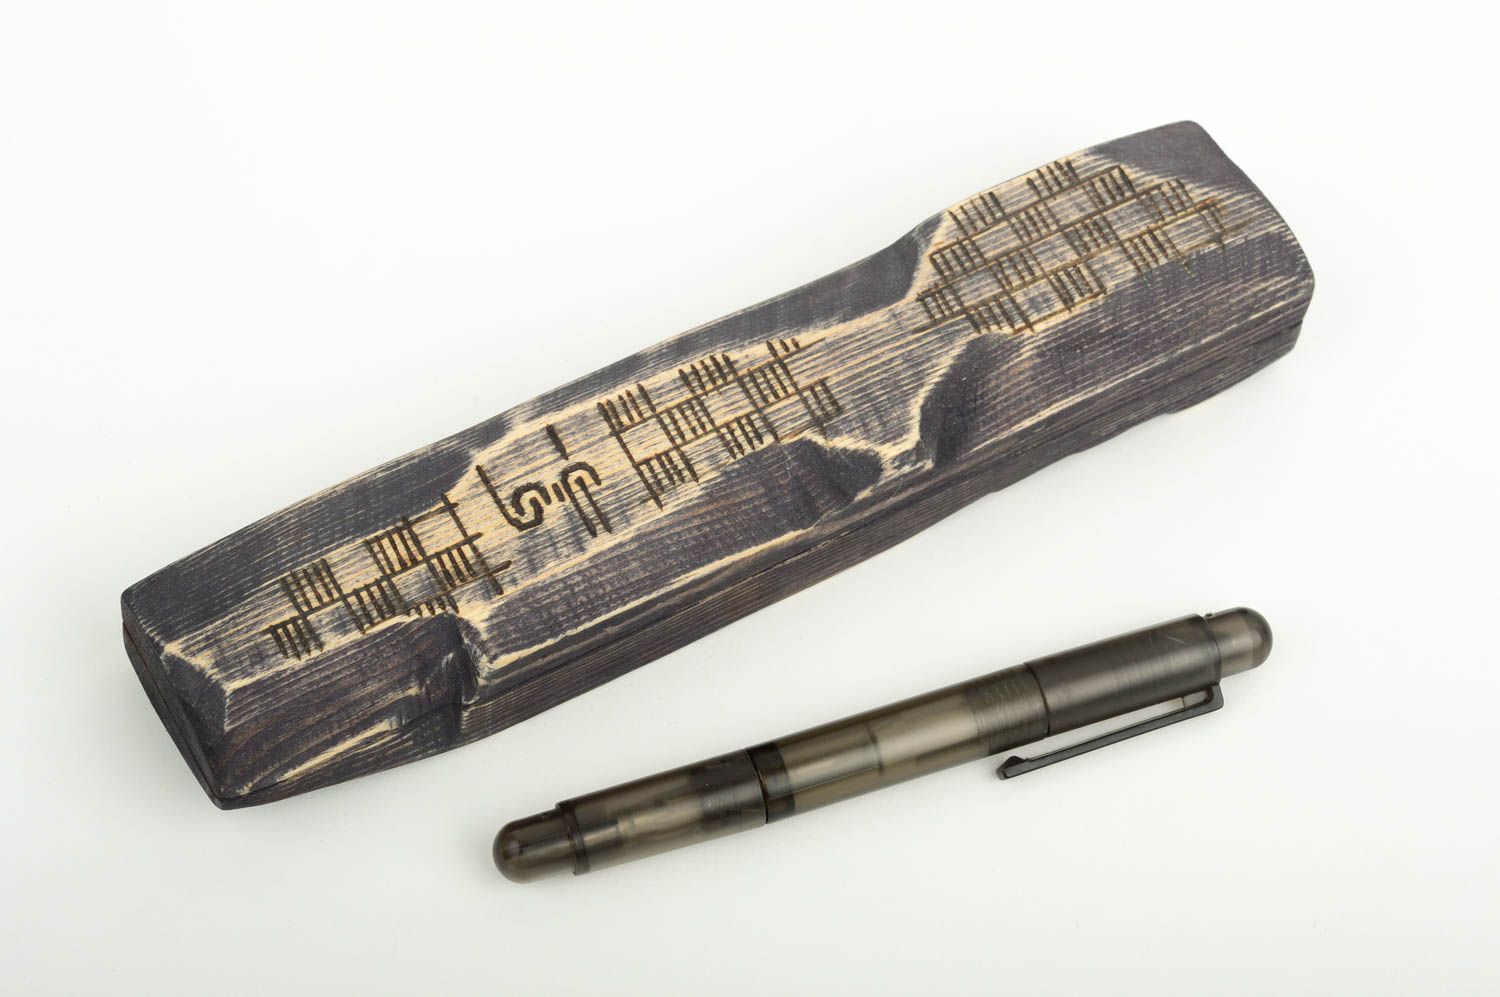 Handmade pen case wooden pen holder pen case holder gift ideas for friends photo 1